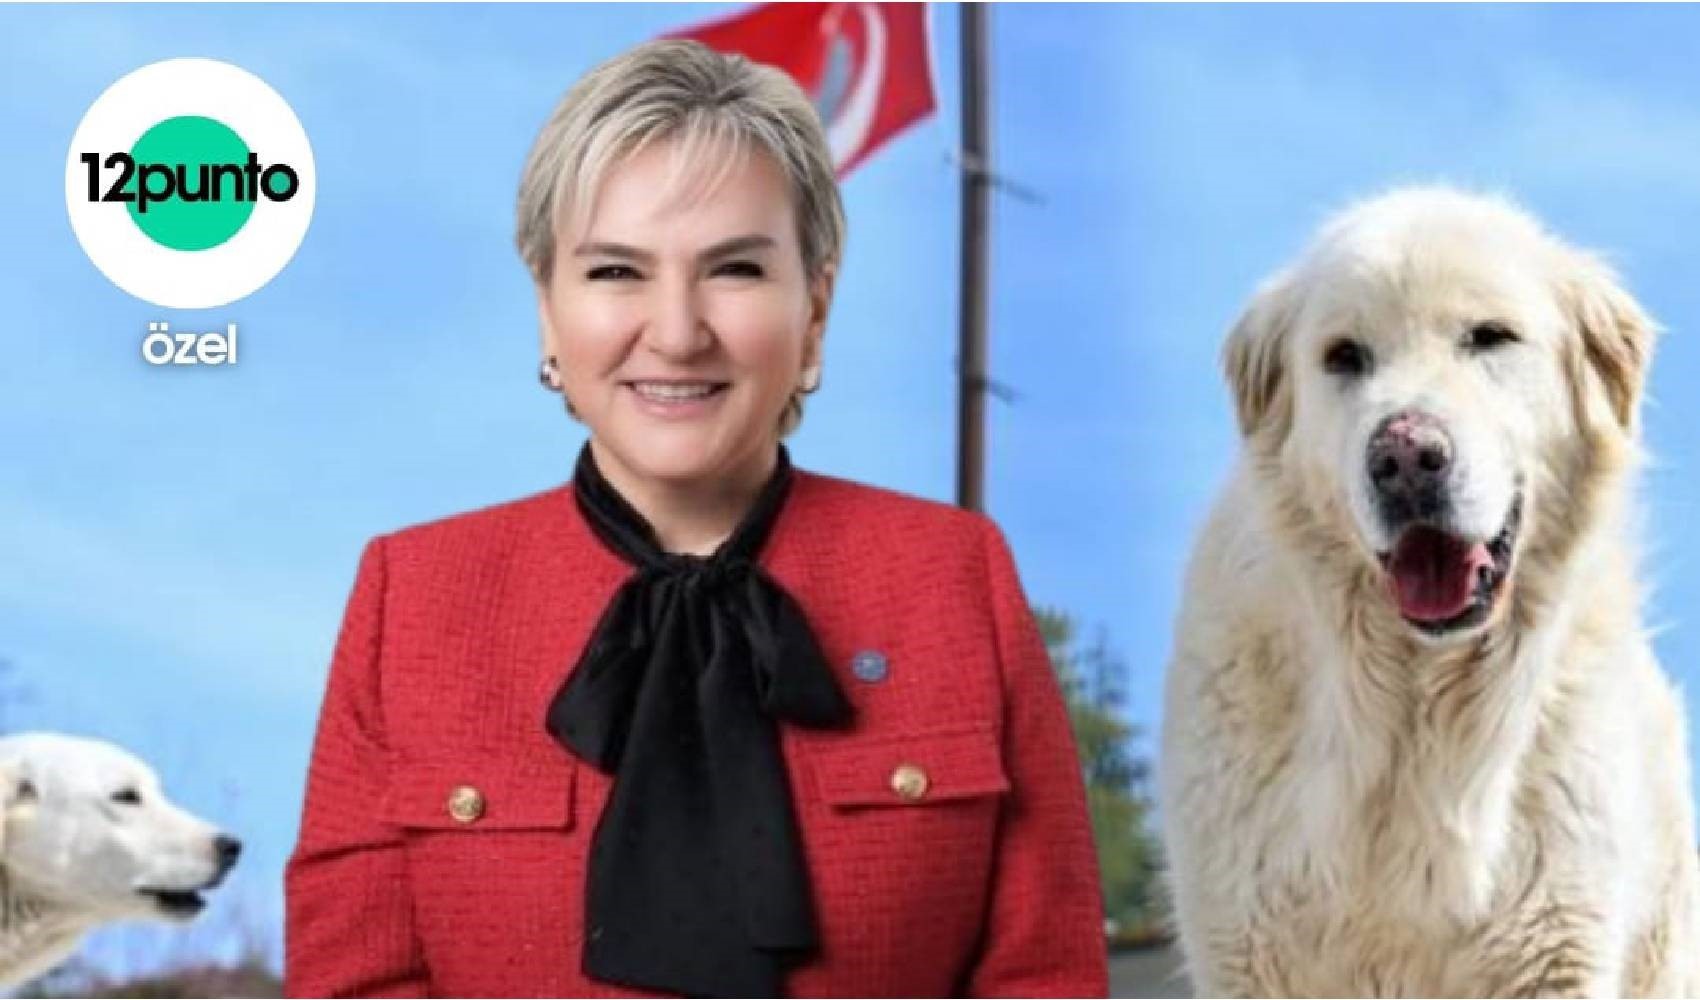 Sokaklarda yaşayan köpekler uyutulacak mı? İYİ Parti İstanbul Milletvekili Nimet Özdemir, 12punto'nun sorularını yanıtladı